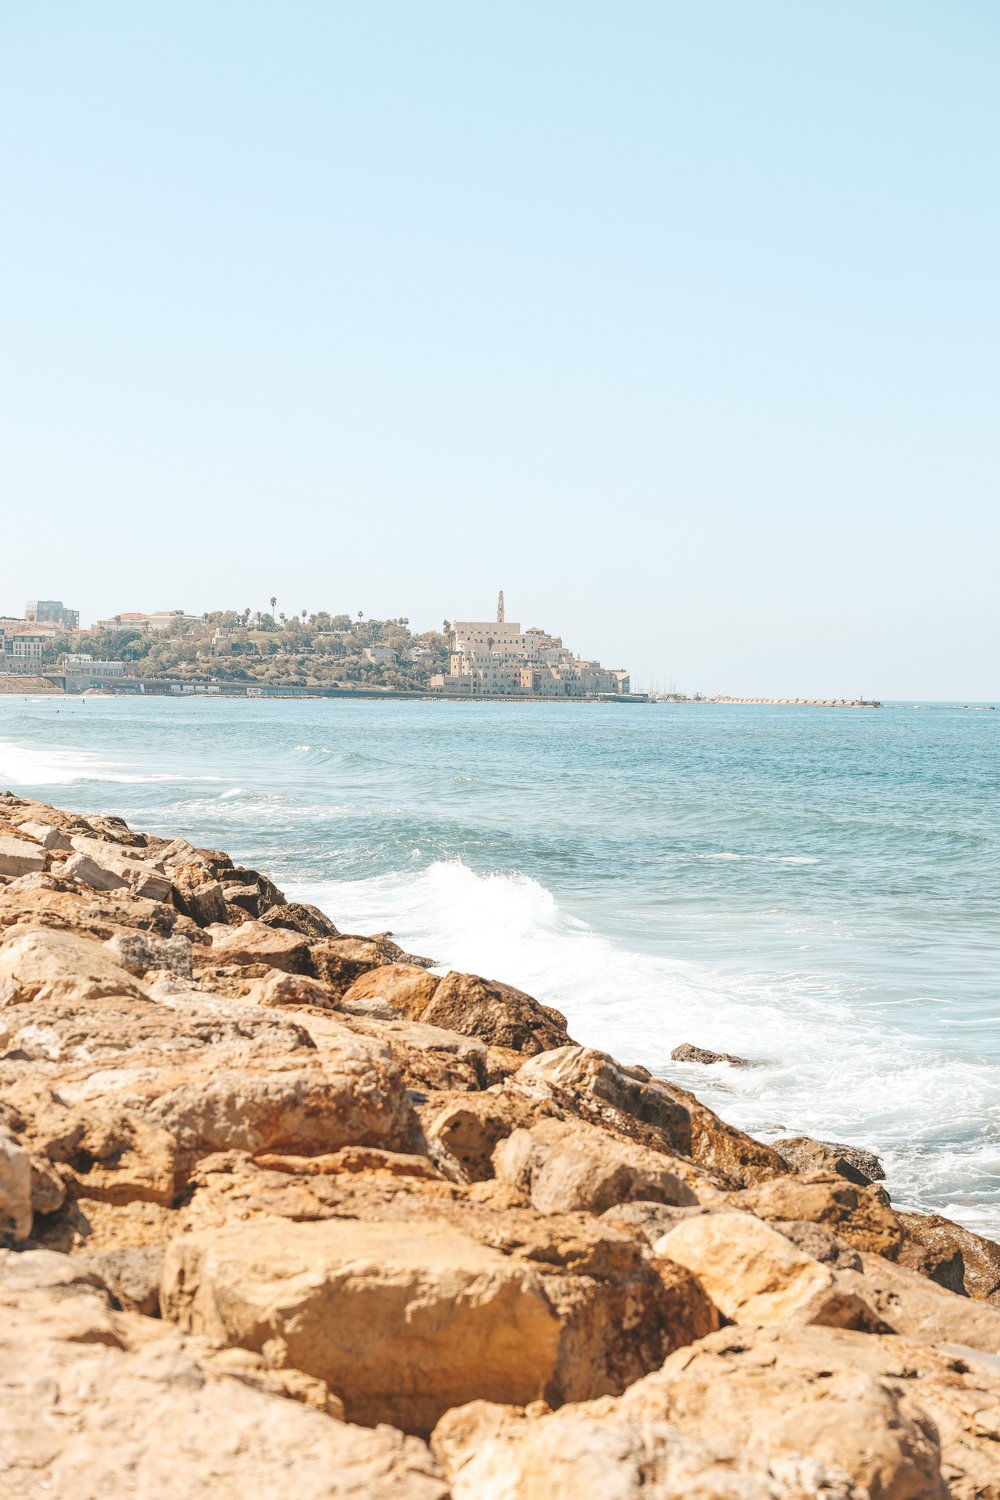 The coastline - Tel Aviv - Israel